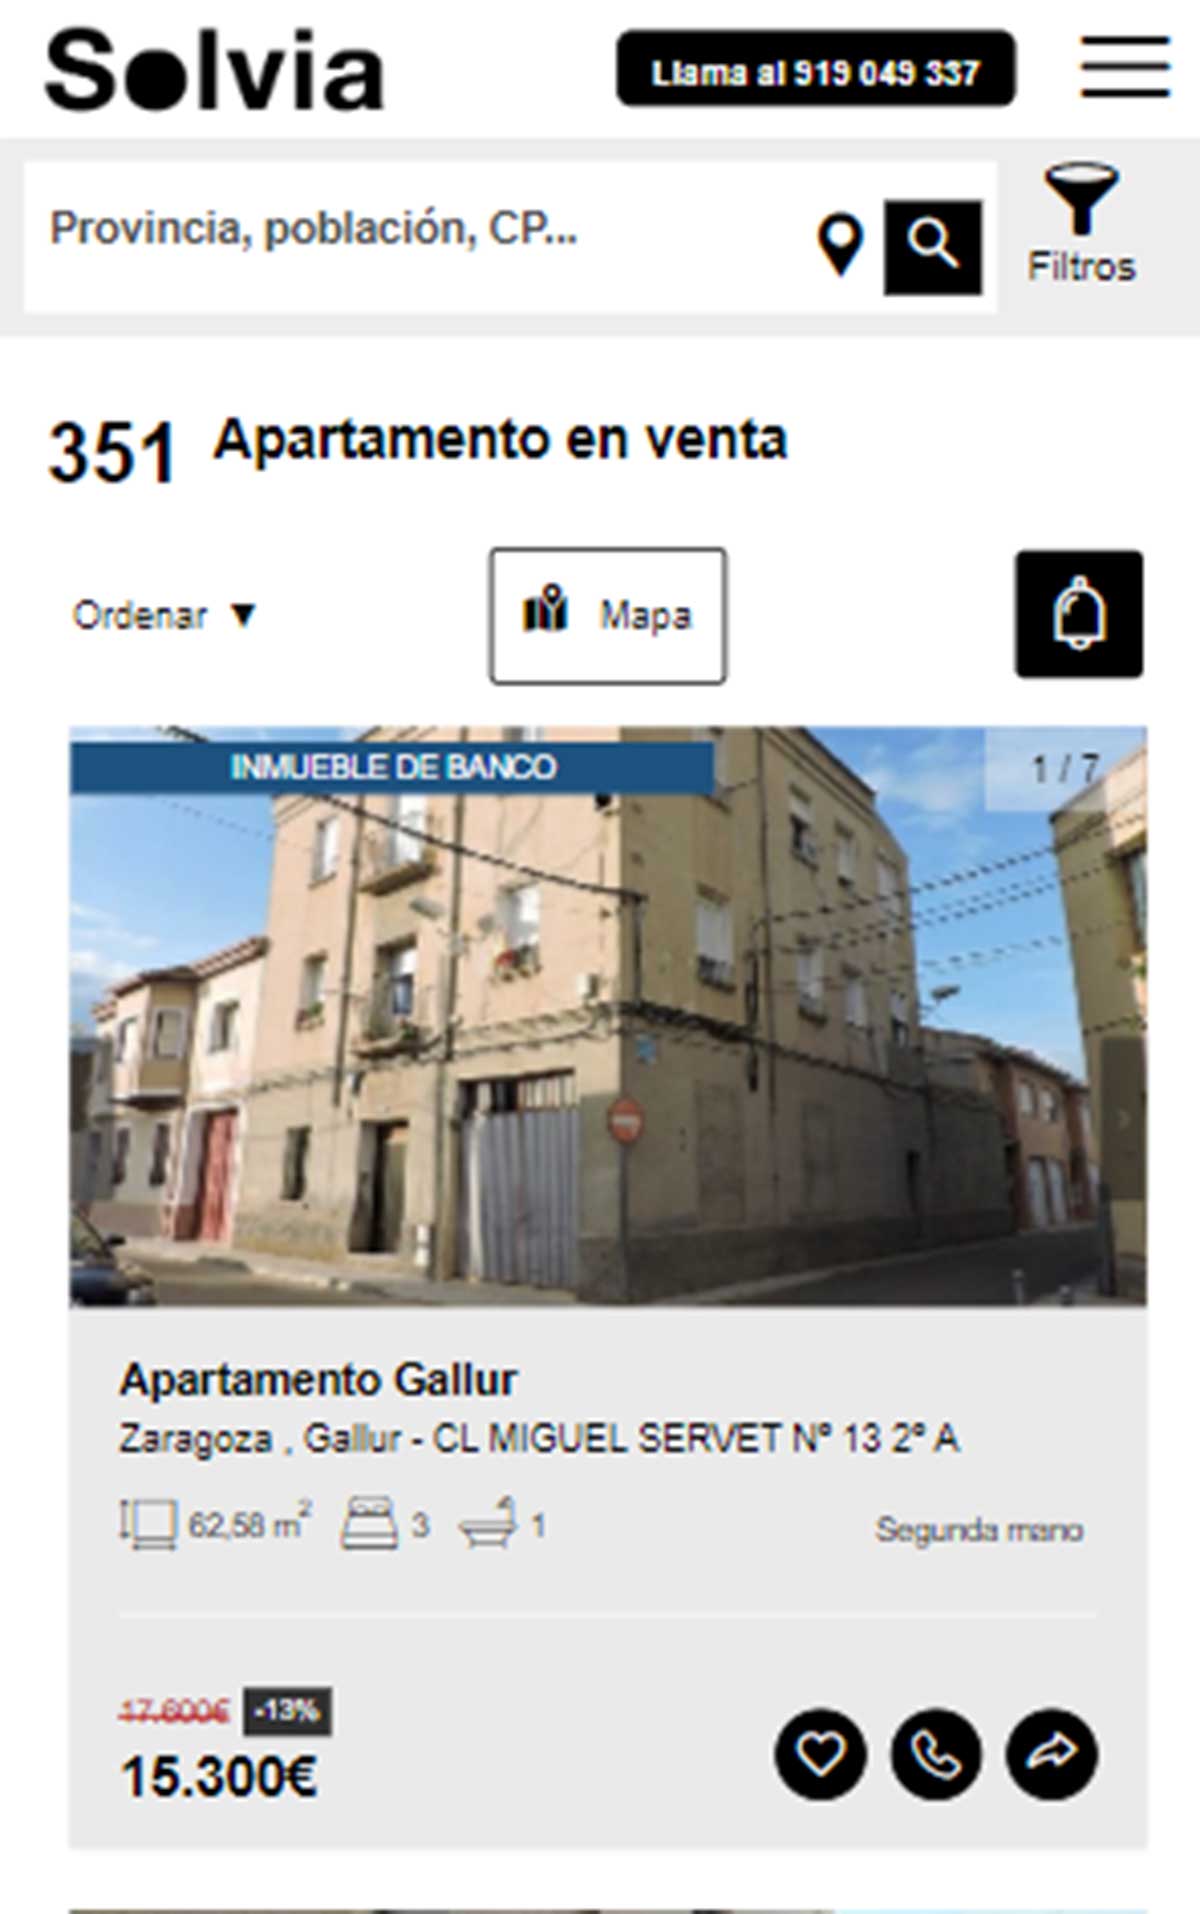 Apartamento a la venta por 15.000 euros